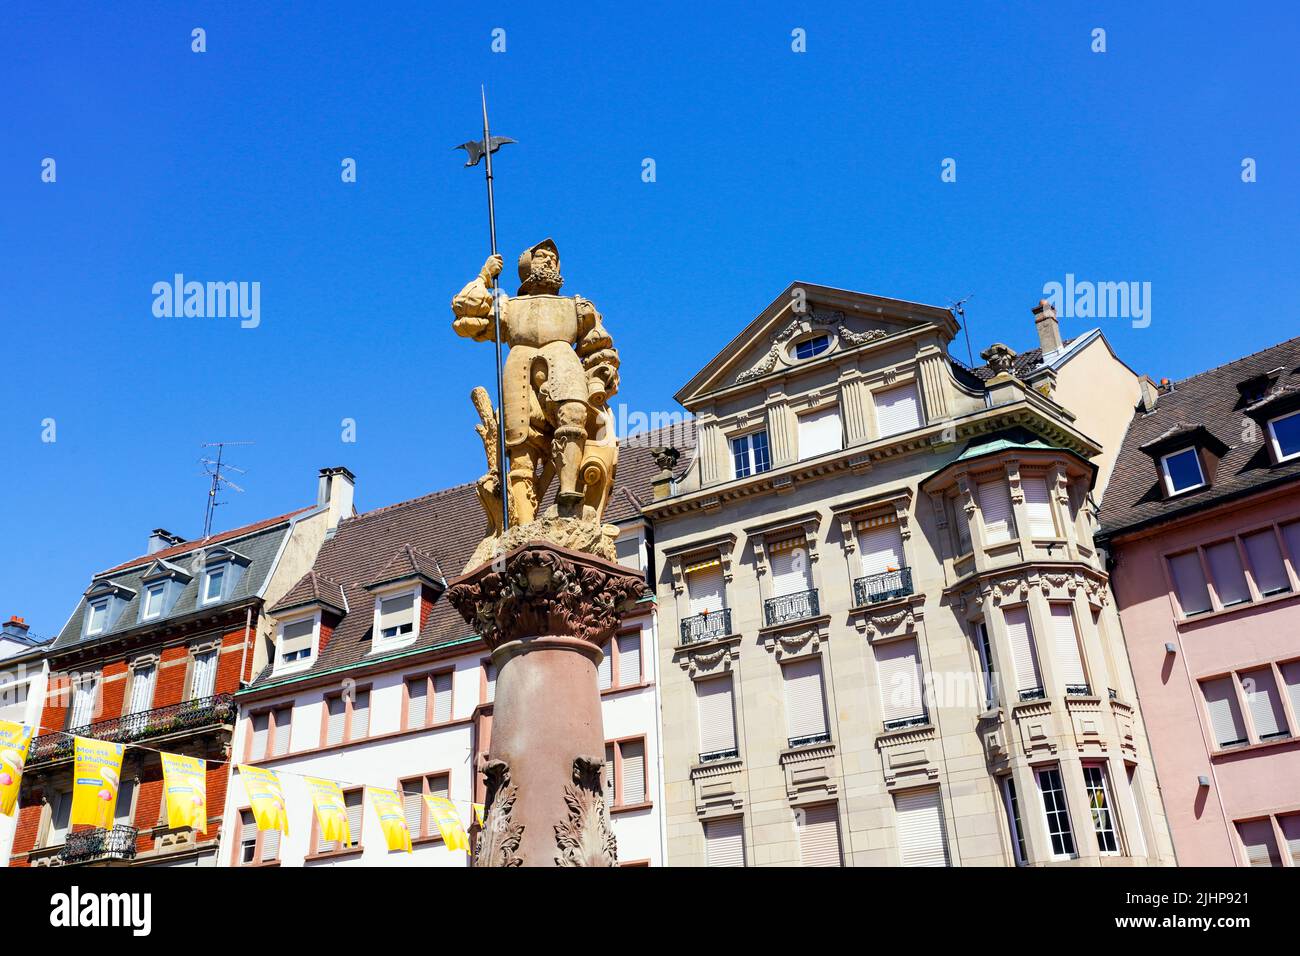 Fontaine du Hallebardier, Place de la Reunion or Rothussplatz, Mulhouse, Alsace, France. Stock Photo